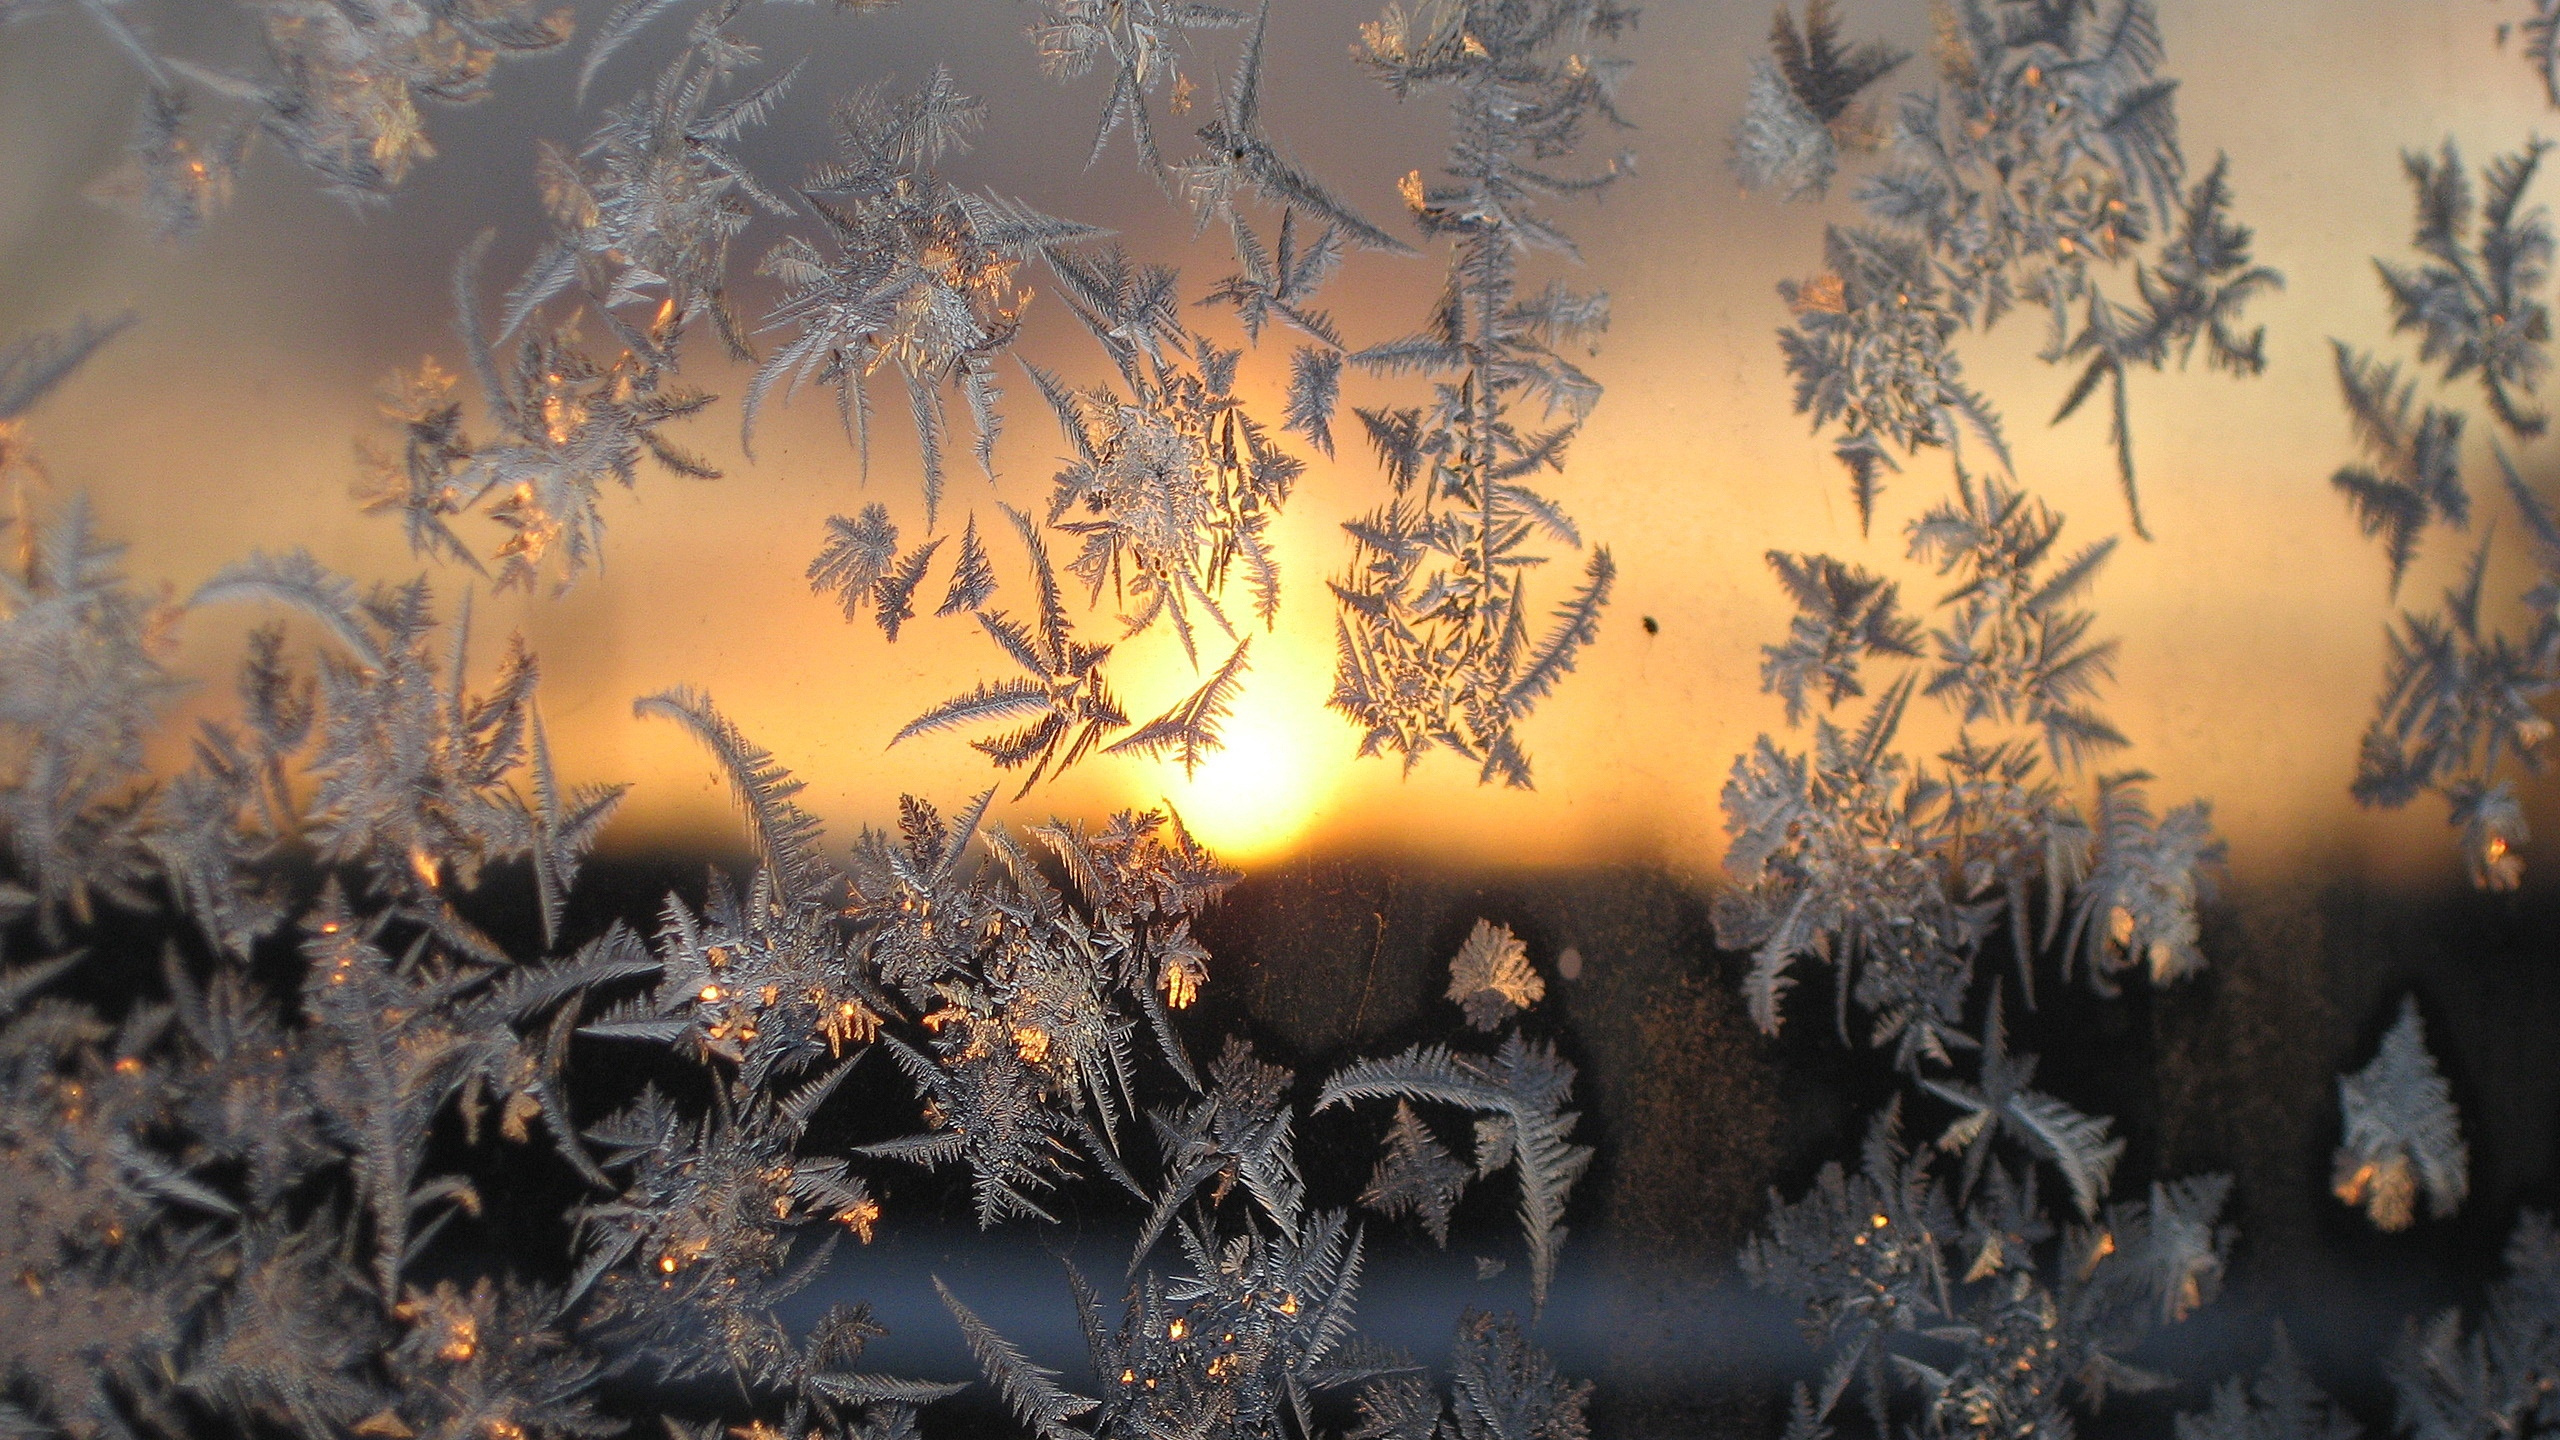 Winter, Snow, Frost, Sunlight, Morning. Wallpaper in 2560x1440 Resolution